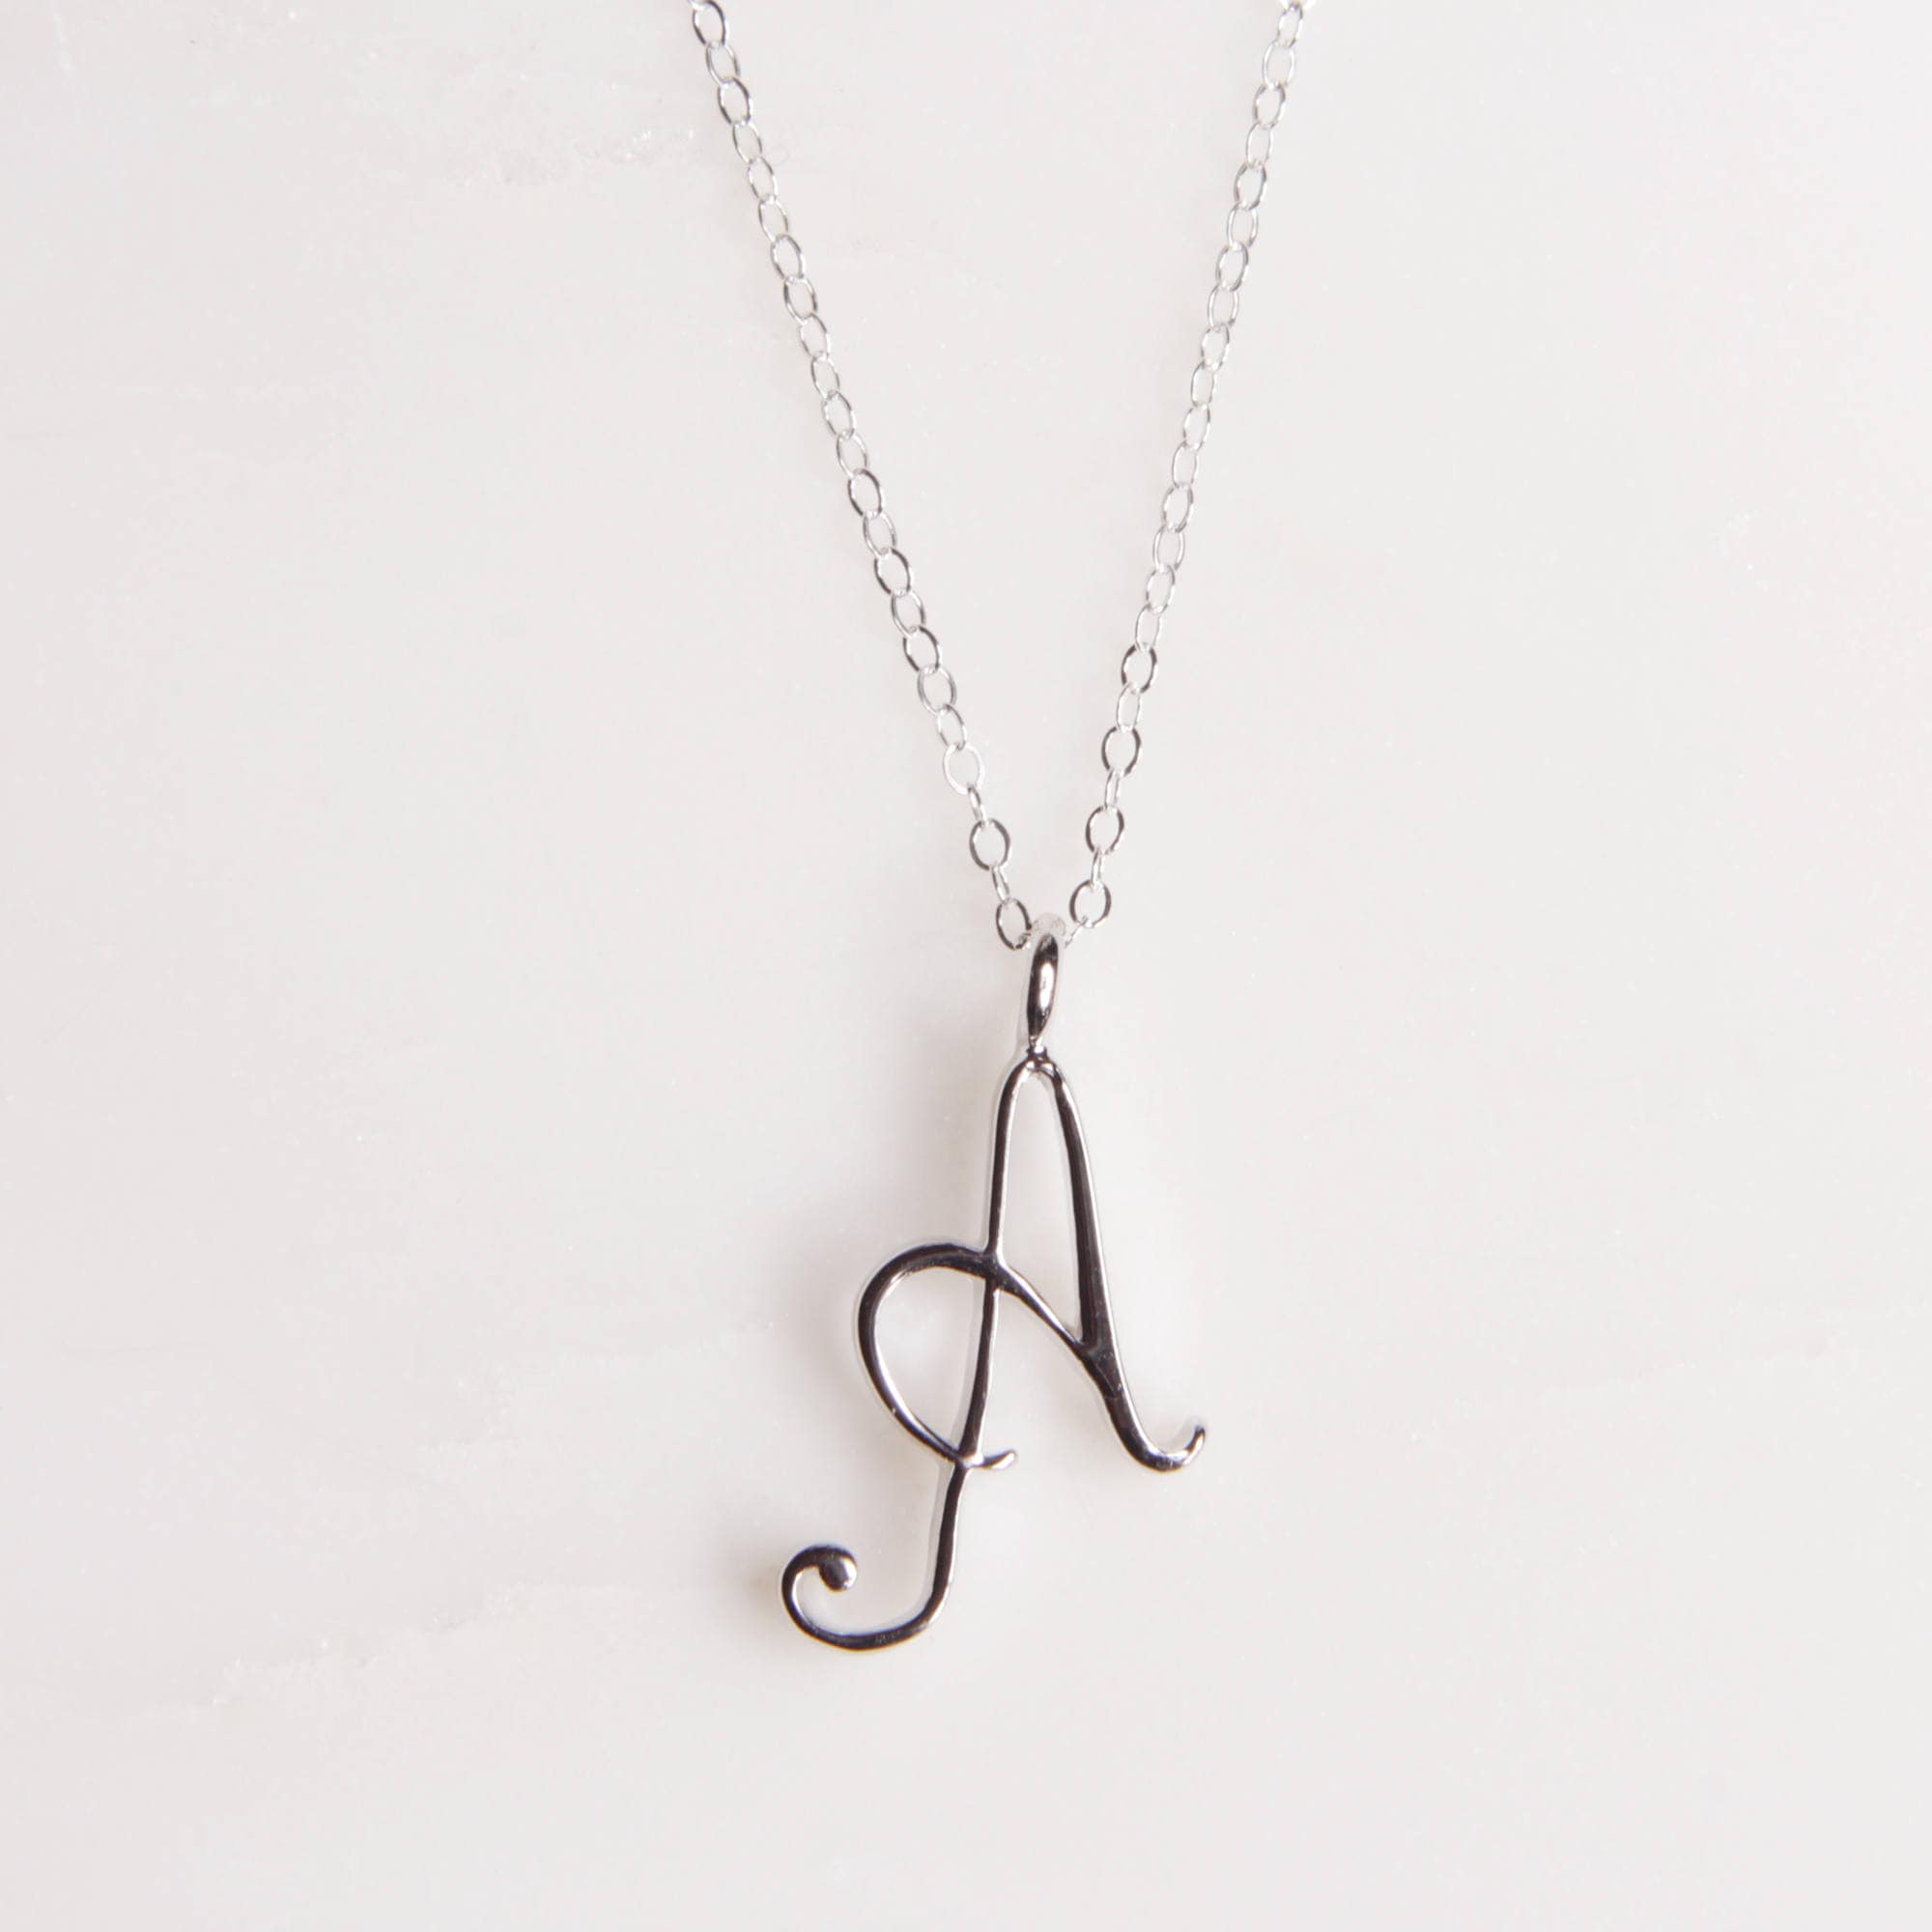 A Cursive Silver Initial Pendant Necklaces Soul & Little Rose   